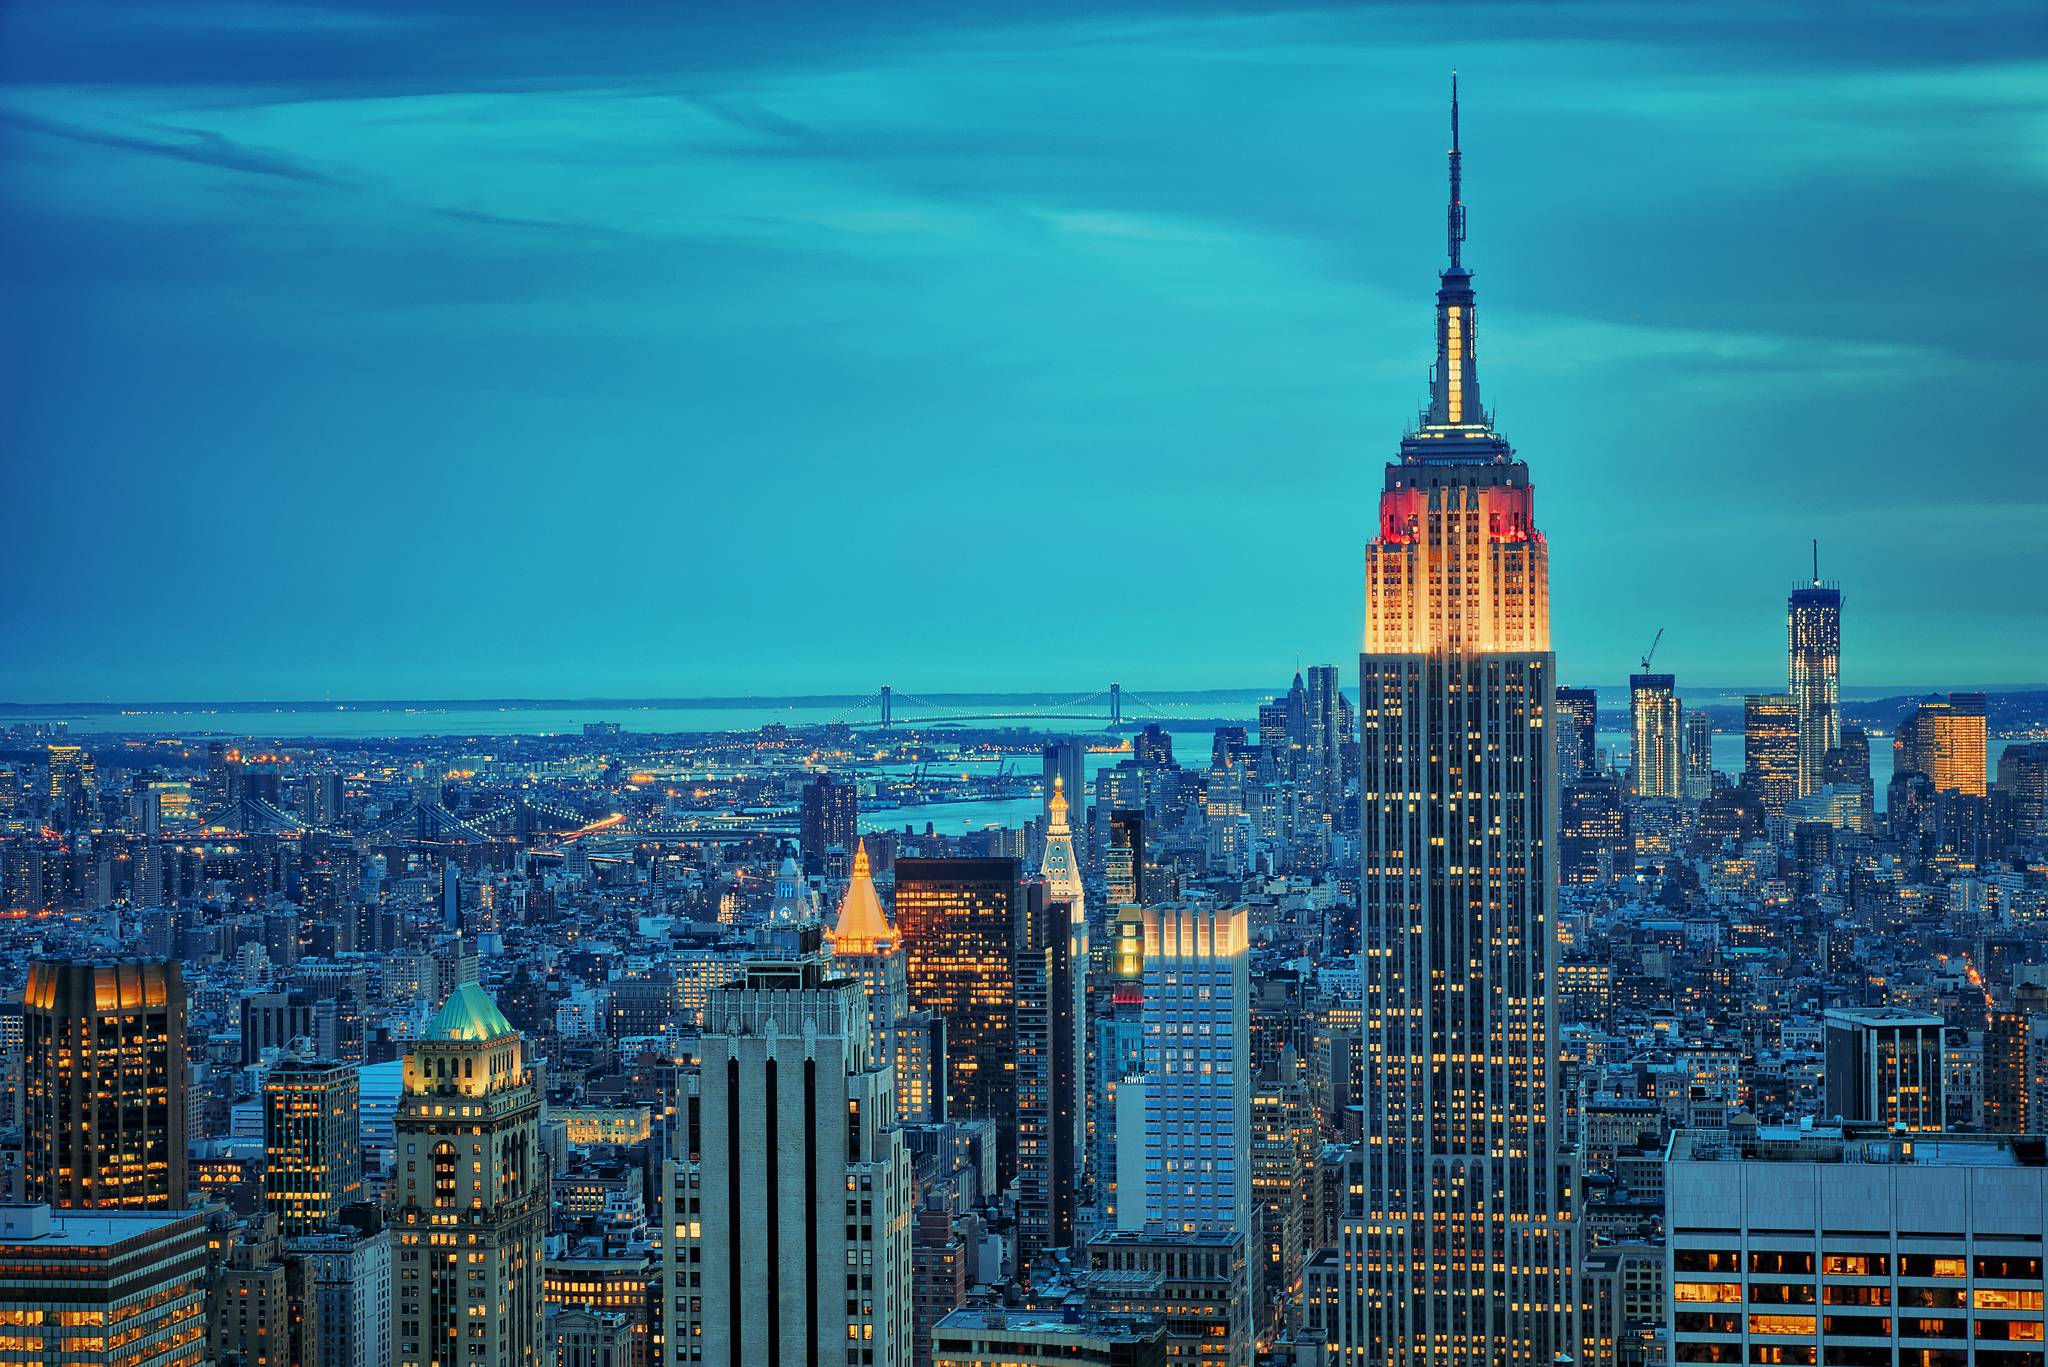 Thành phố New York đã trở thành biểu tượng về kiến trúc đương đại và phía trước của sự tiến bộ - Skyline của thành phố đã làm say đắm hàng triệu người trên khắp thế giới. Bạn sẽ không muốn bỏ lỡ cơ hội để khám phá vẻ đẹp của bầu trời thành phố New York. Hãy xem những hình ảnh đẹp về New York City skyline ngay bây giờ!